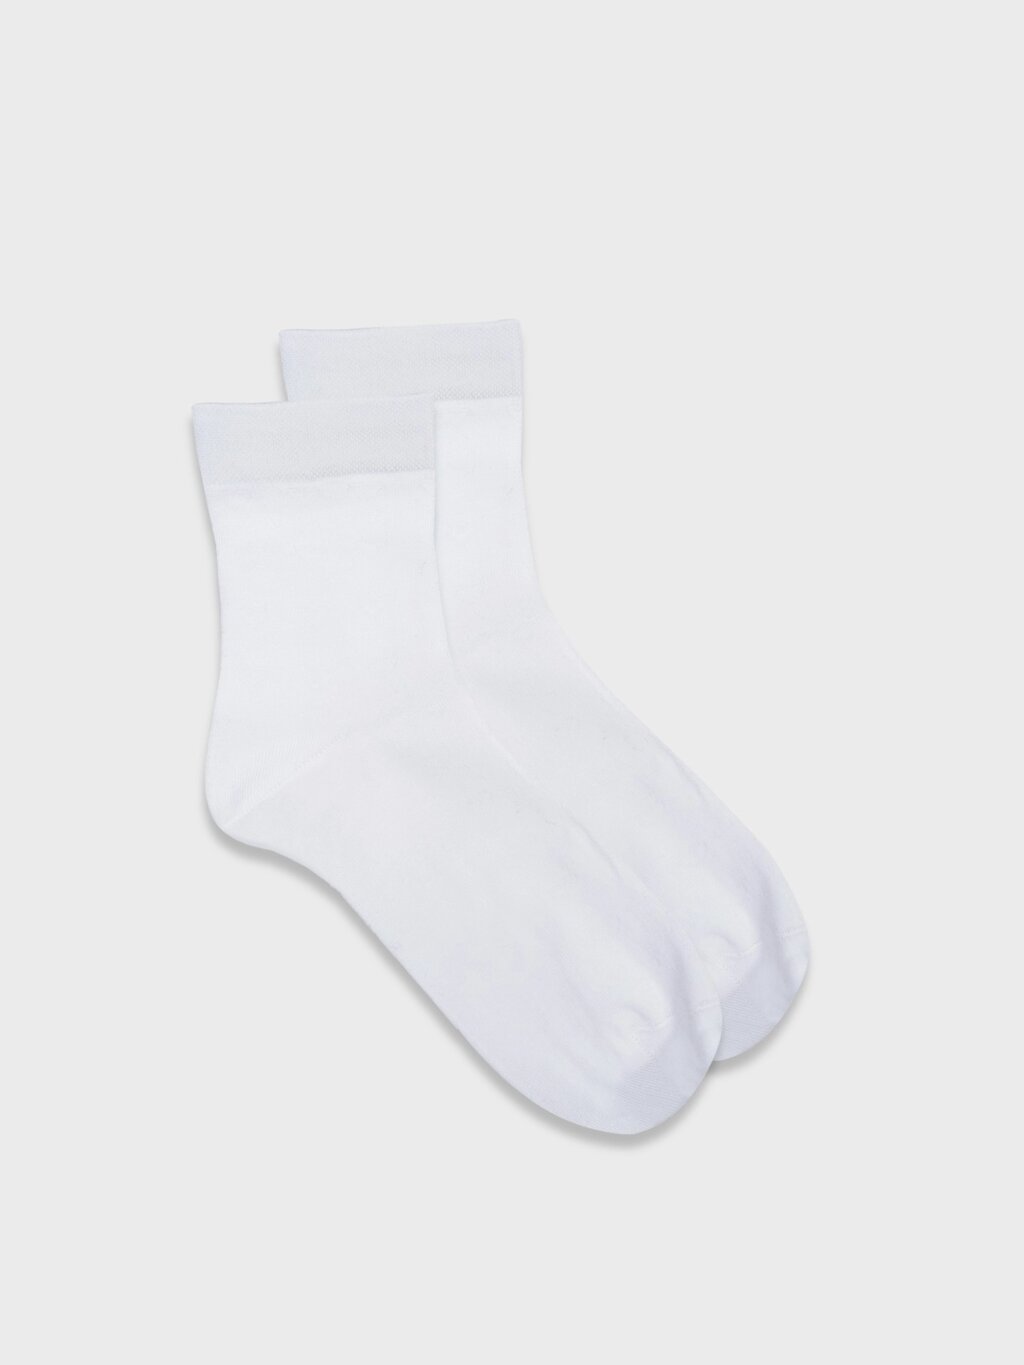 Белые хлопковые носки (35-37) от компании Admi - фото 1